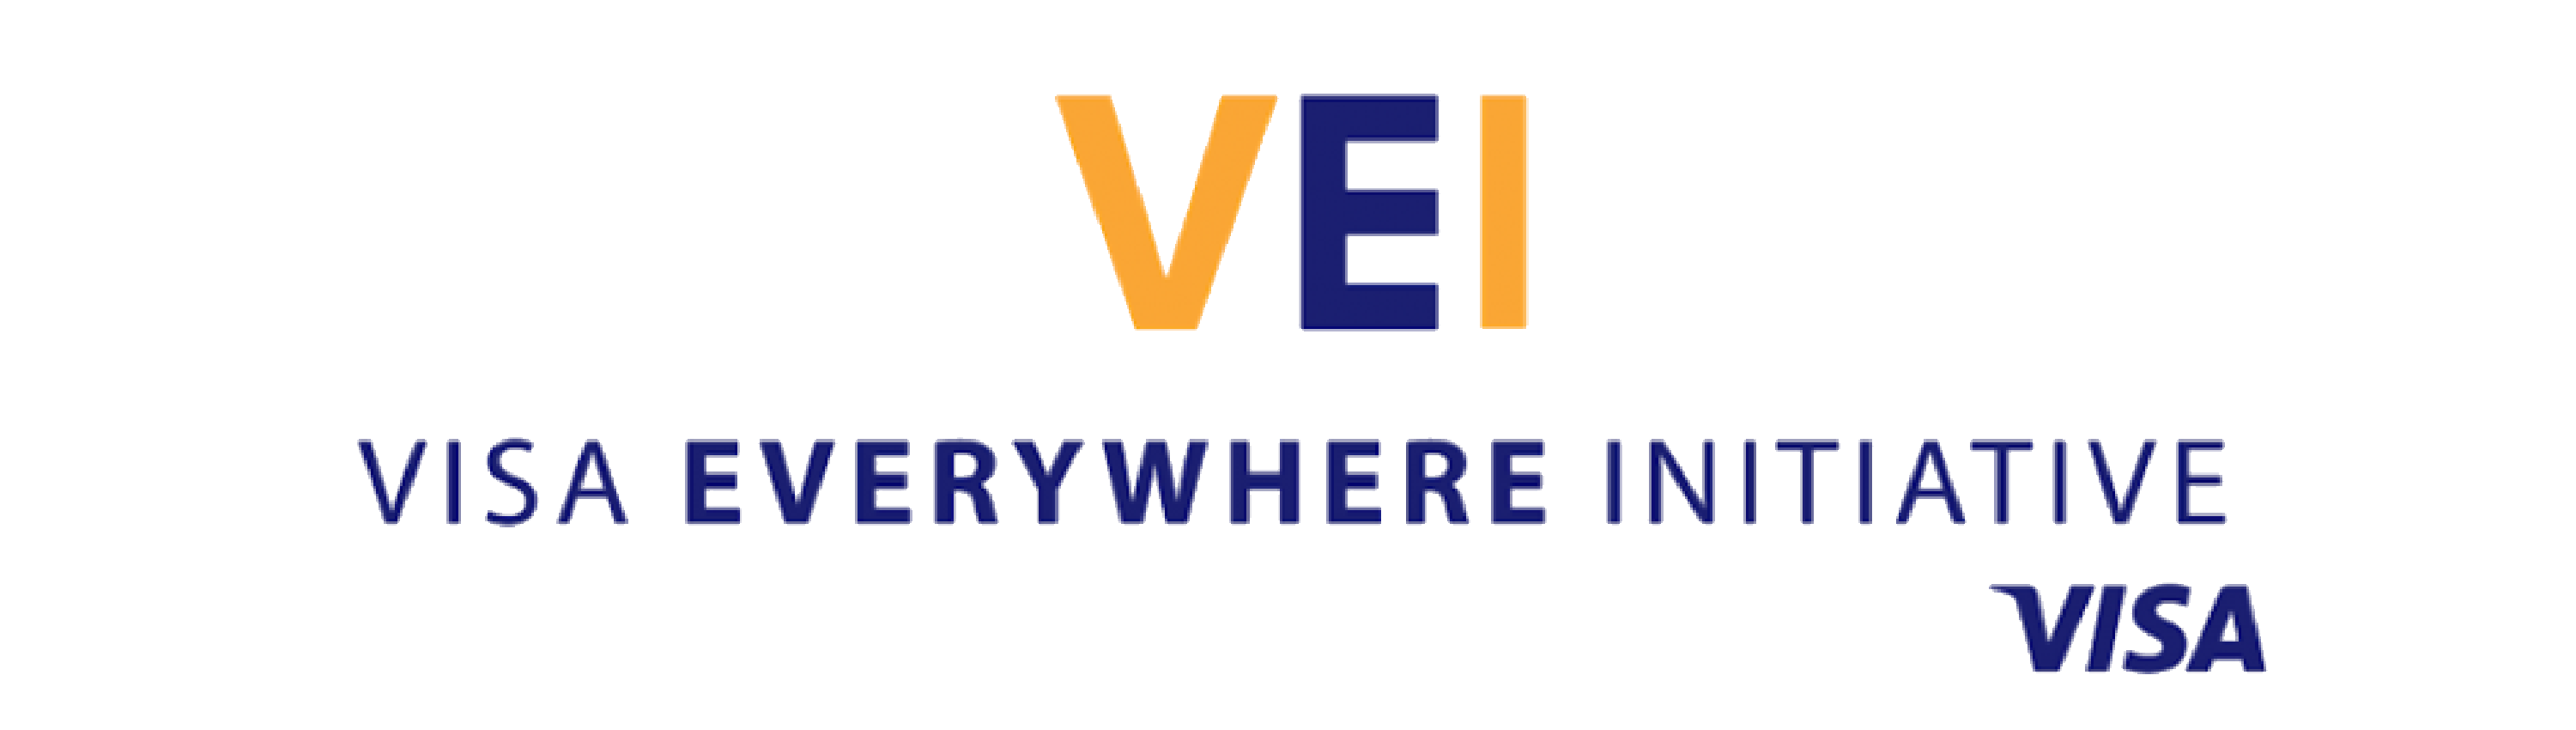 logos premios_VEI